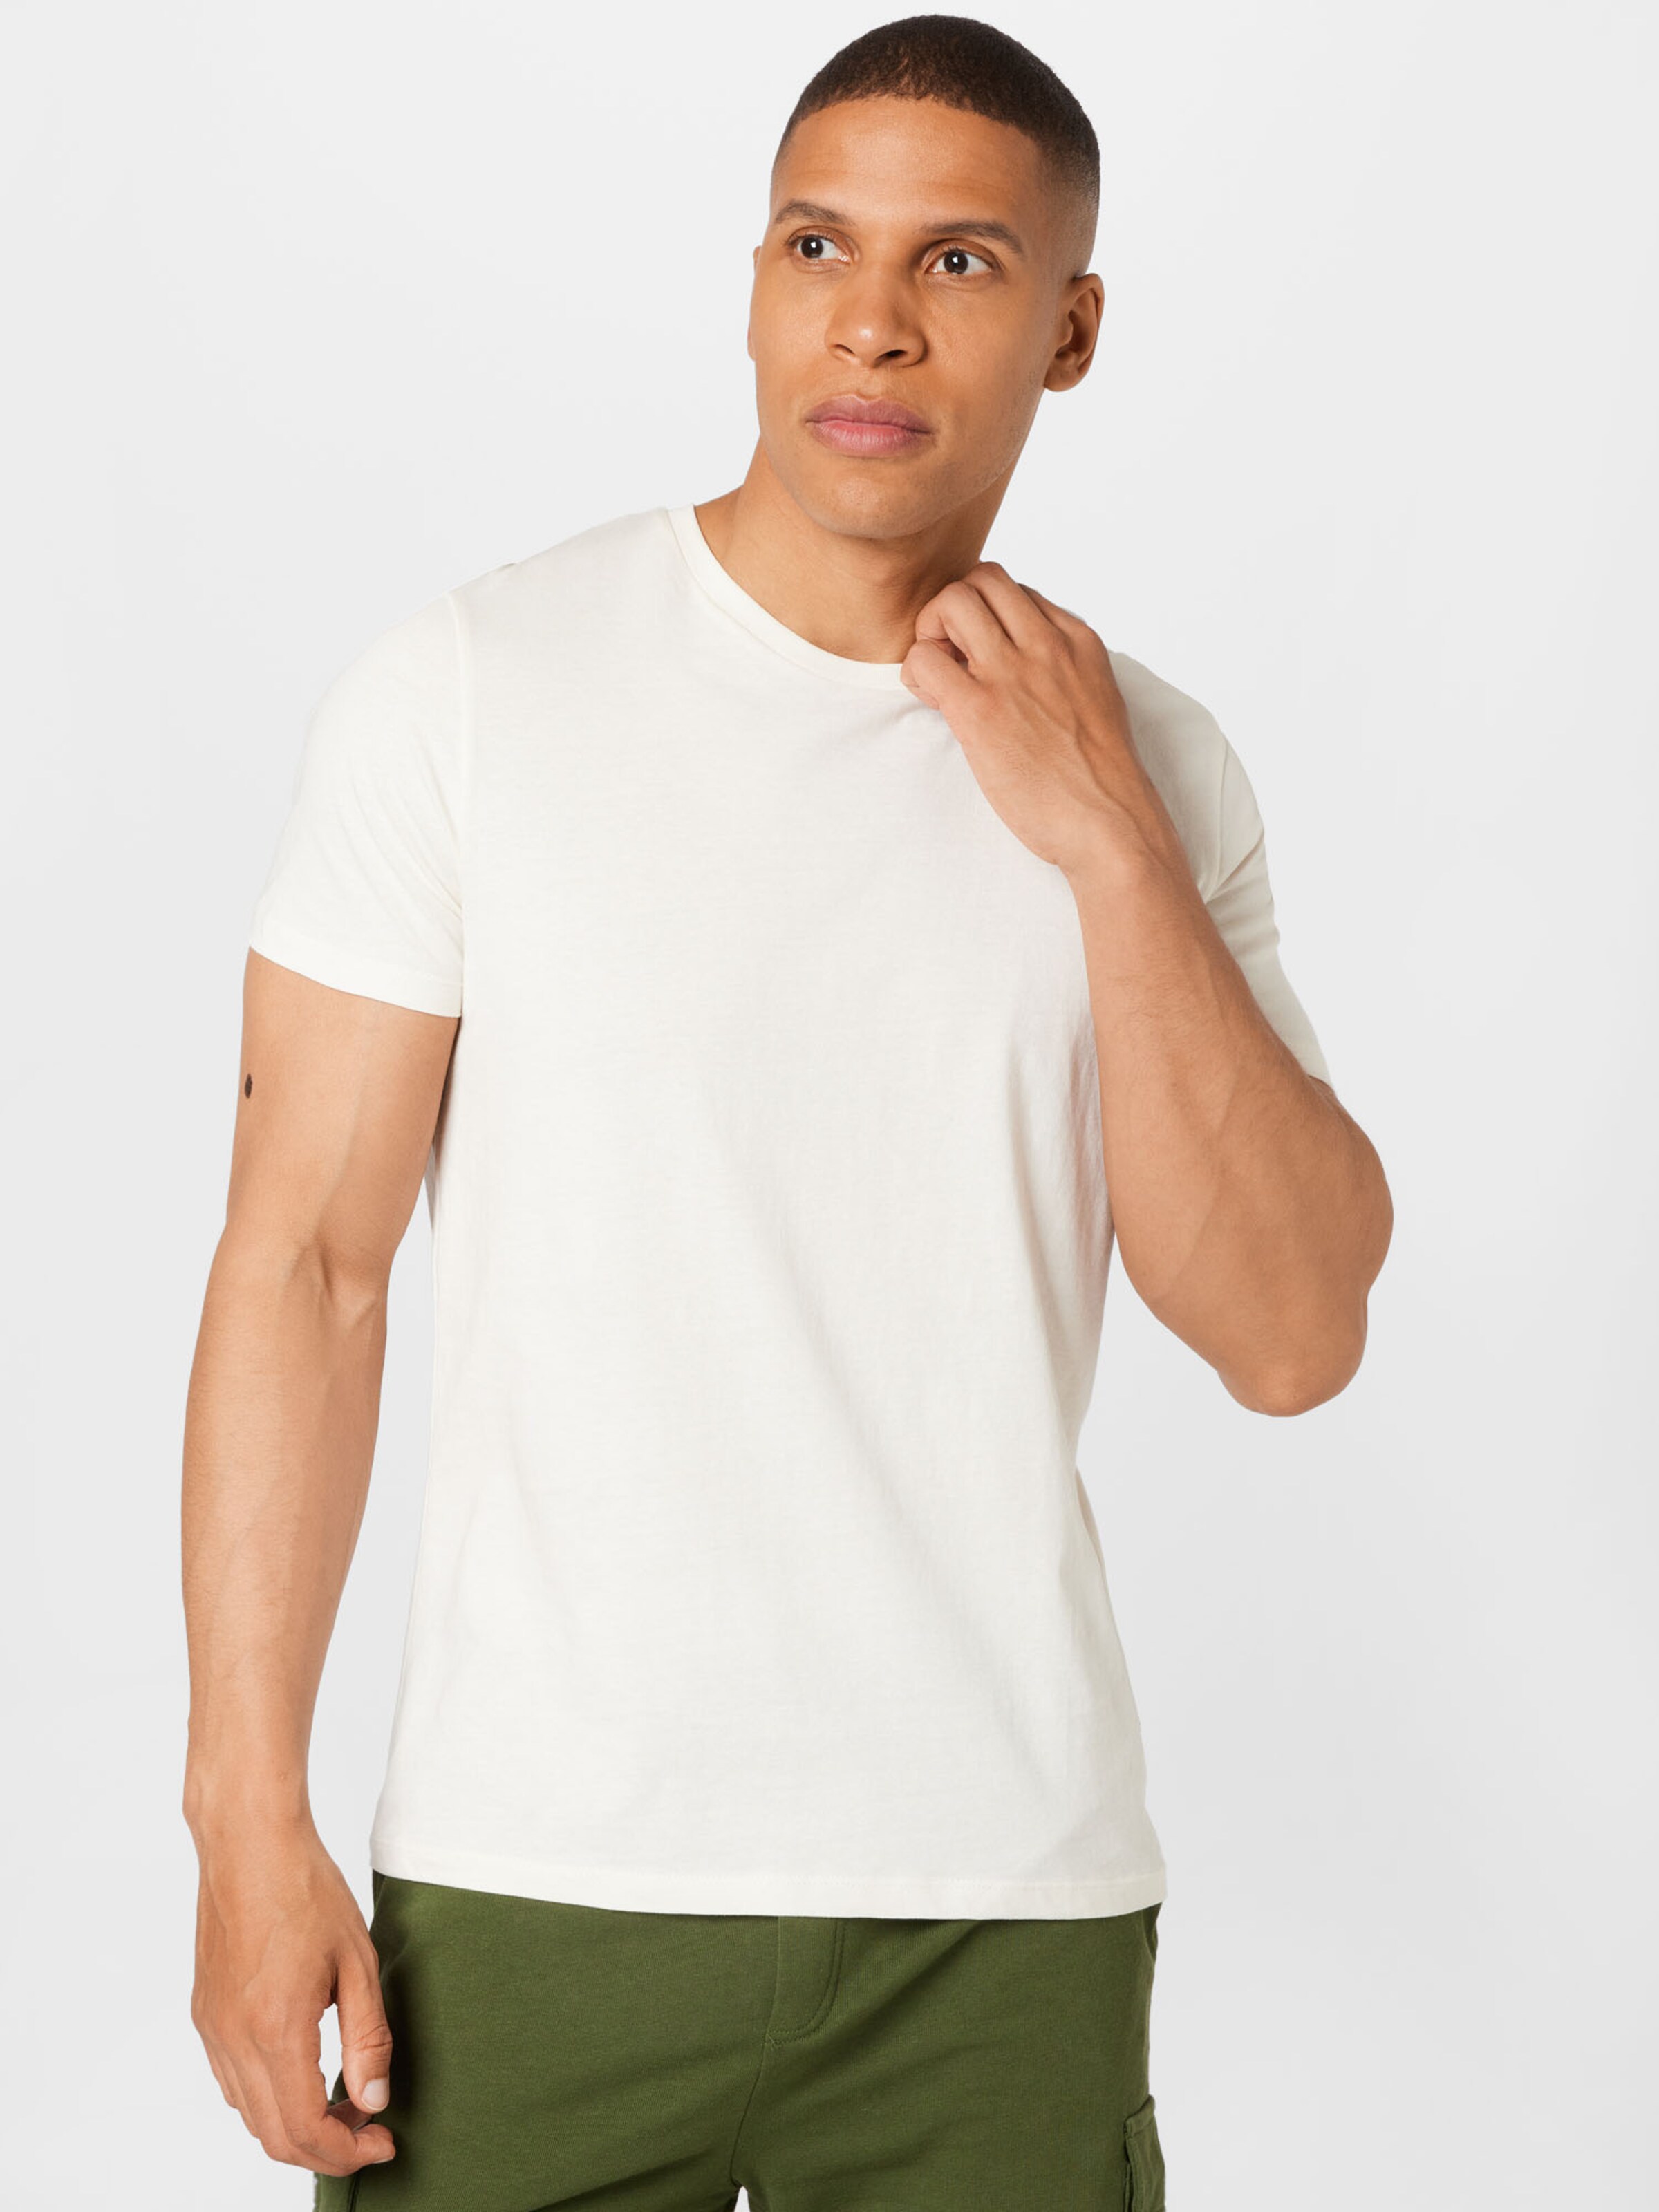 Männer Shirts BURTON MENSWEAR LONDON T-Shirt in Mischfarben - SX89500